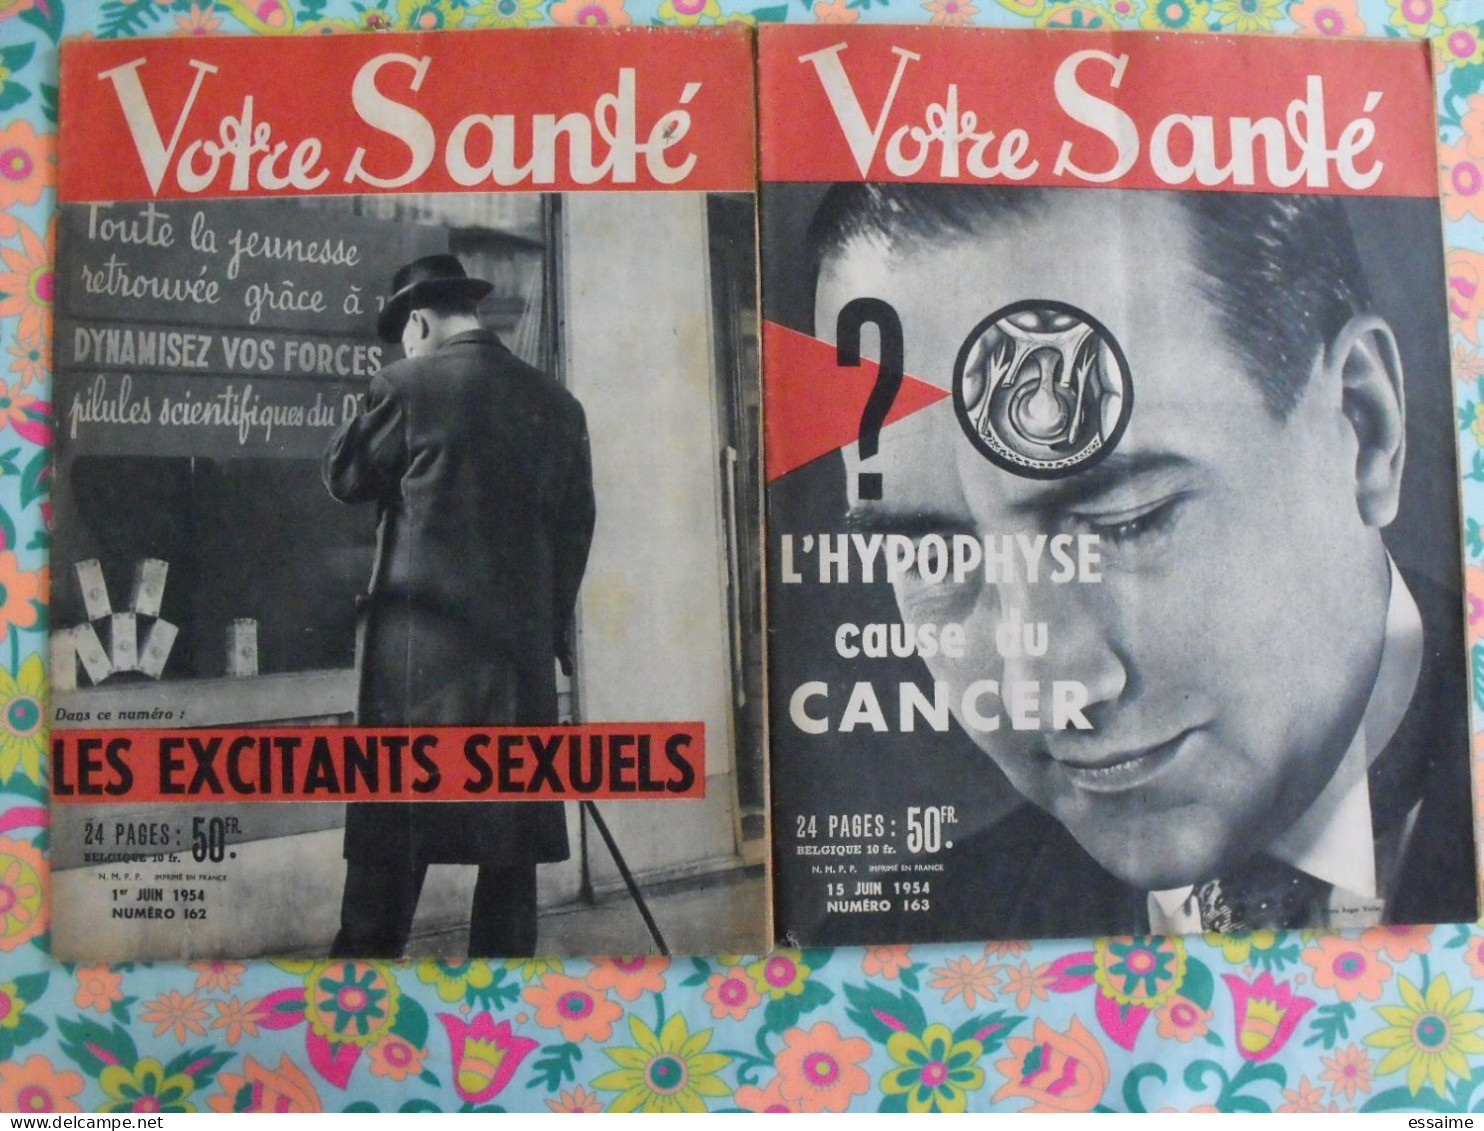 lot de 23 revues Votre Santé de 1954.insommie excitants sexuels obésité ménopause amour frigide